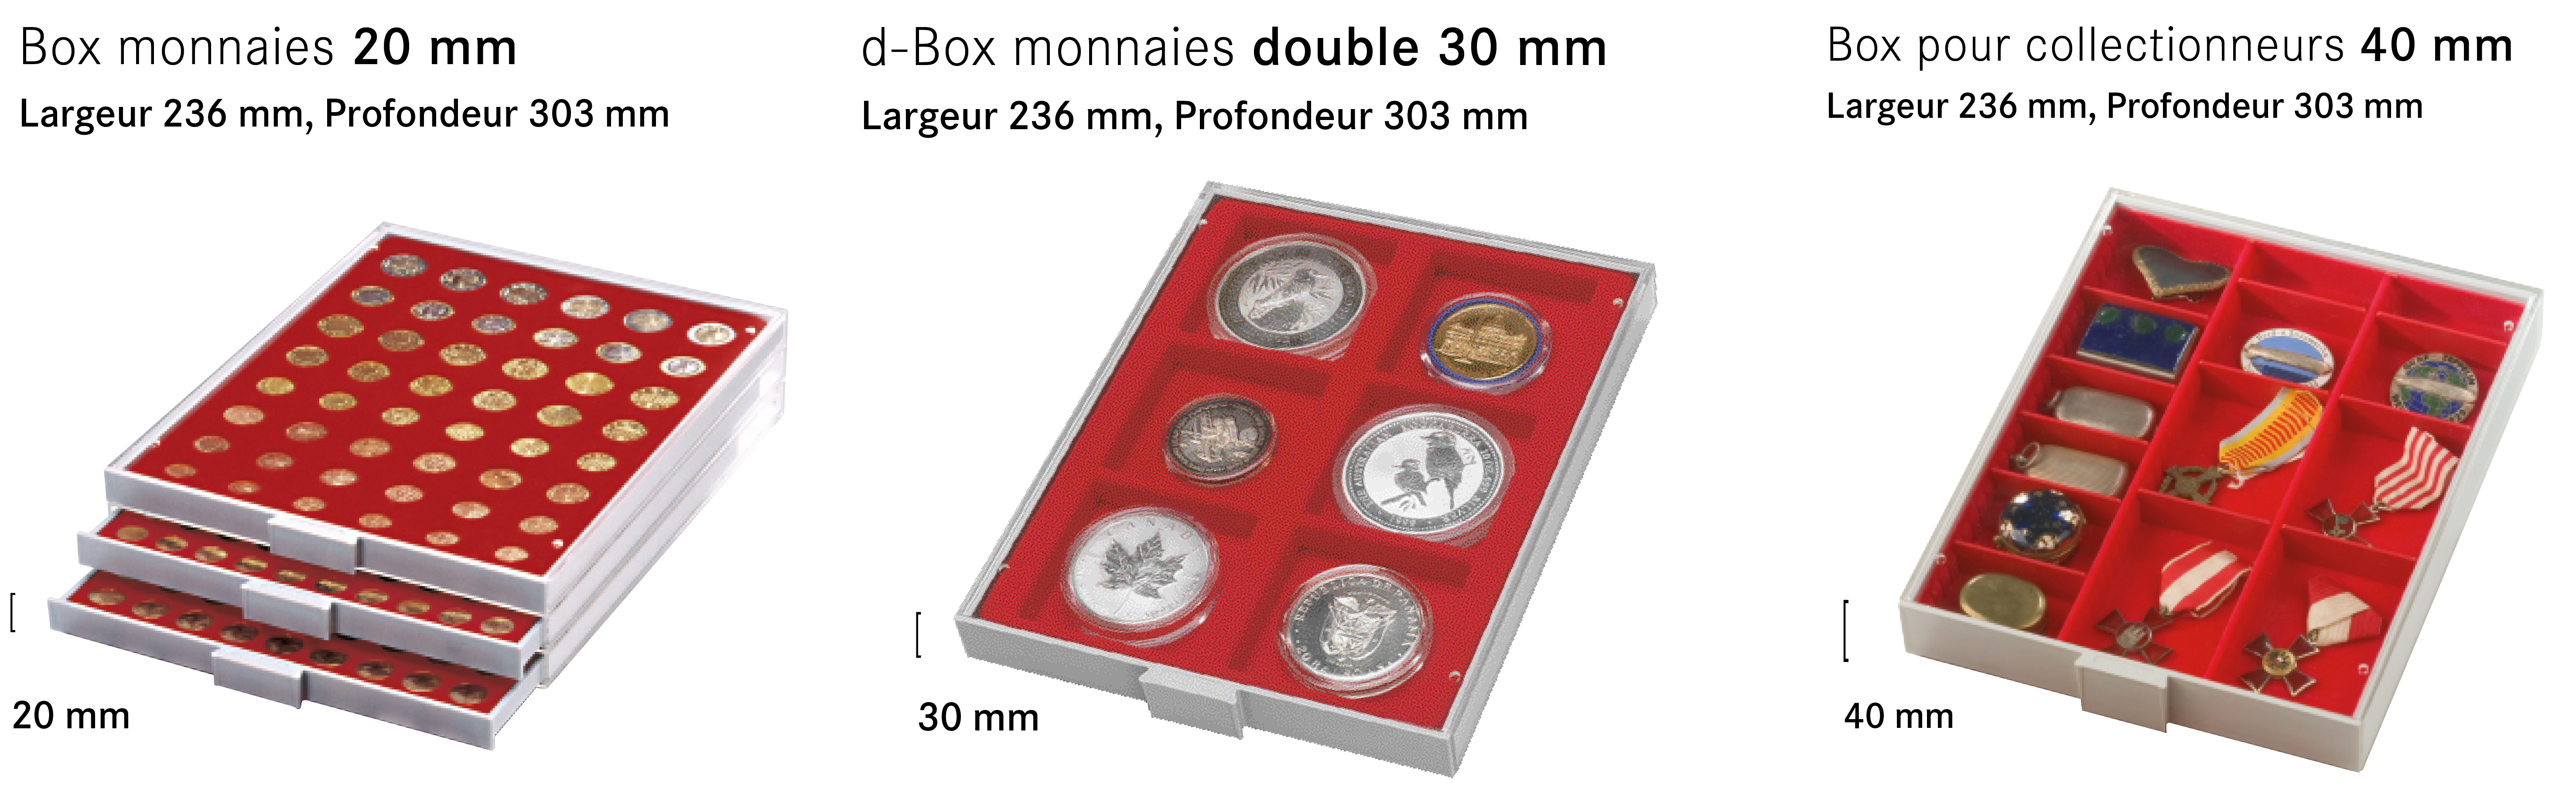 ODONTOMETRE PHILA COMBI BOX LINDNER - Yvert et Tellier - Philatélie et  Numismatique